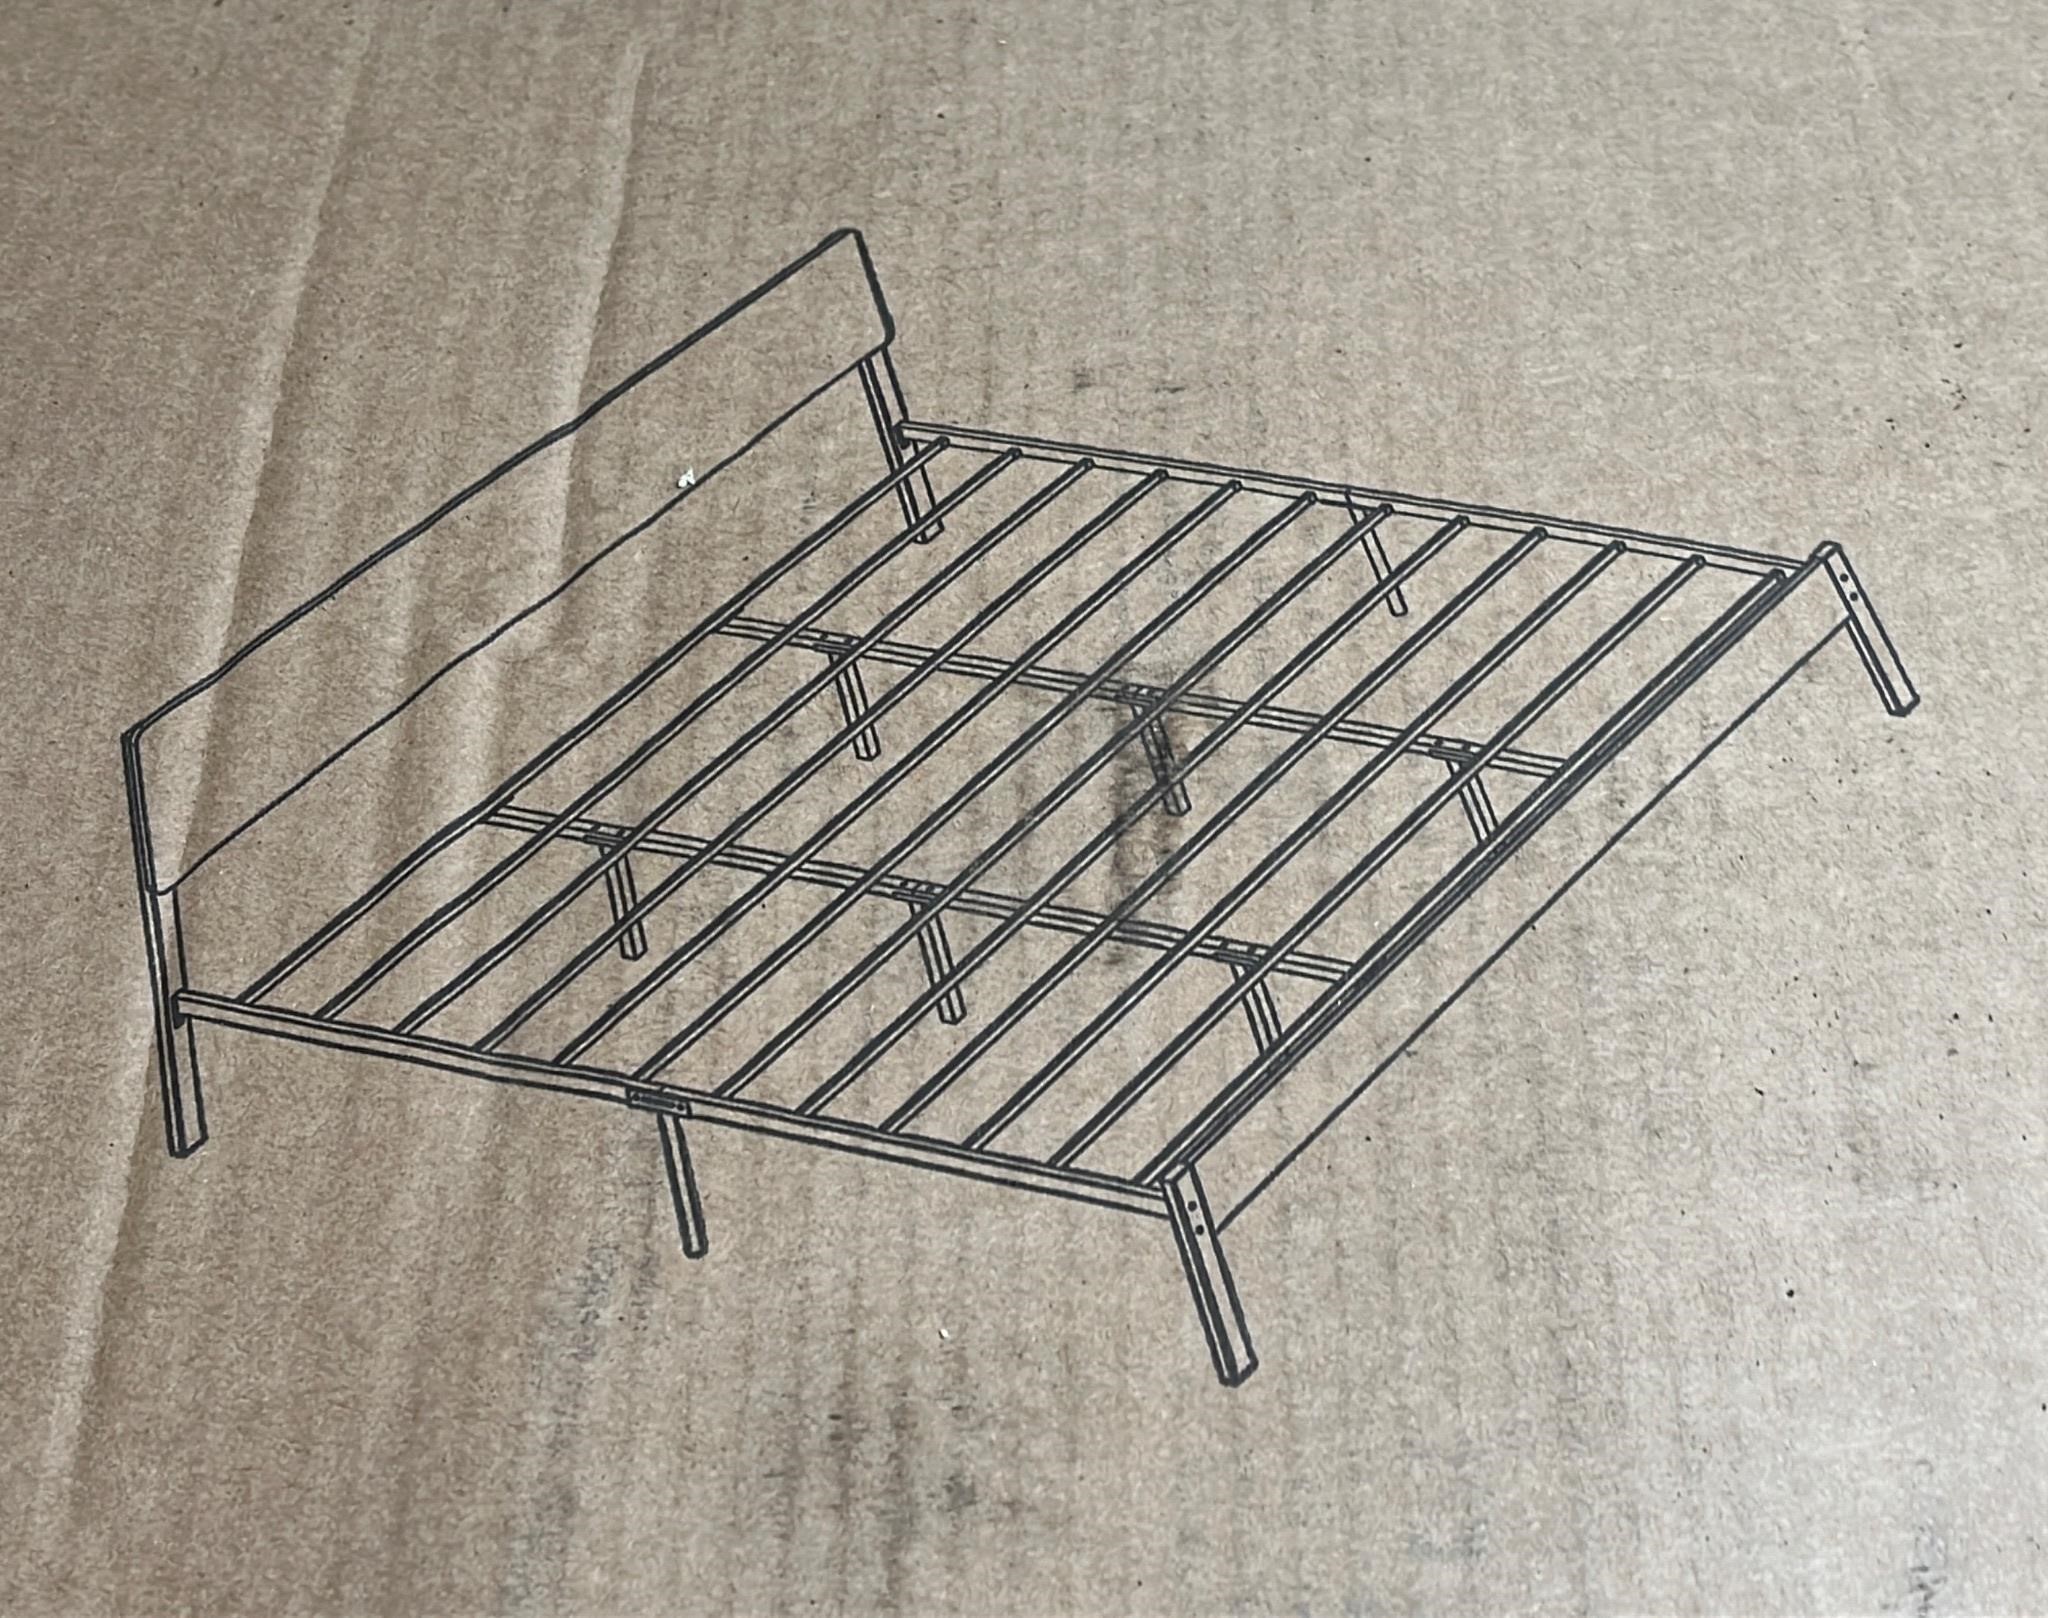 King Size Metal Platform Bed Frame